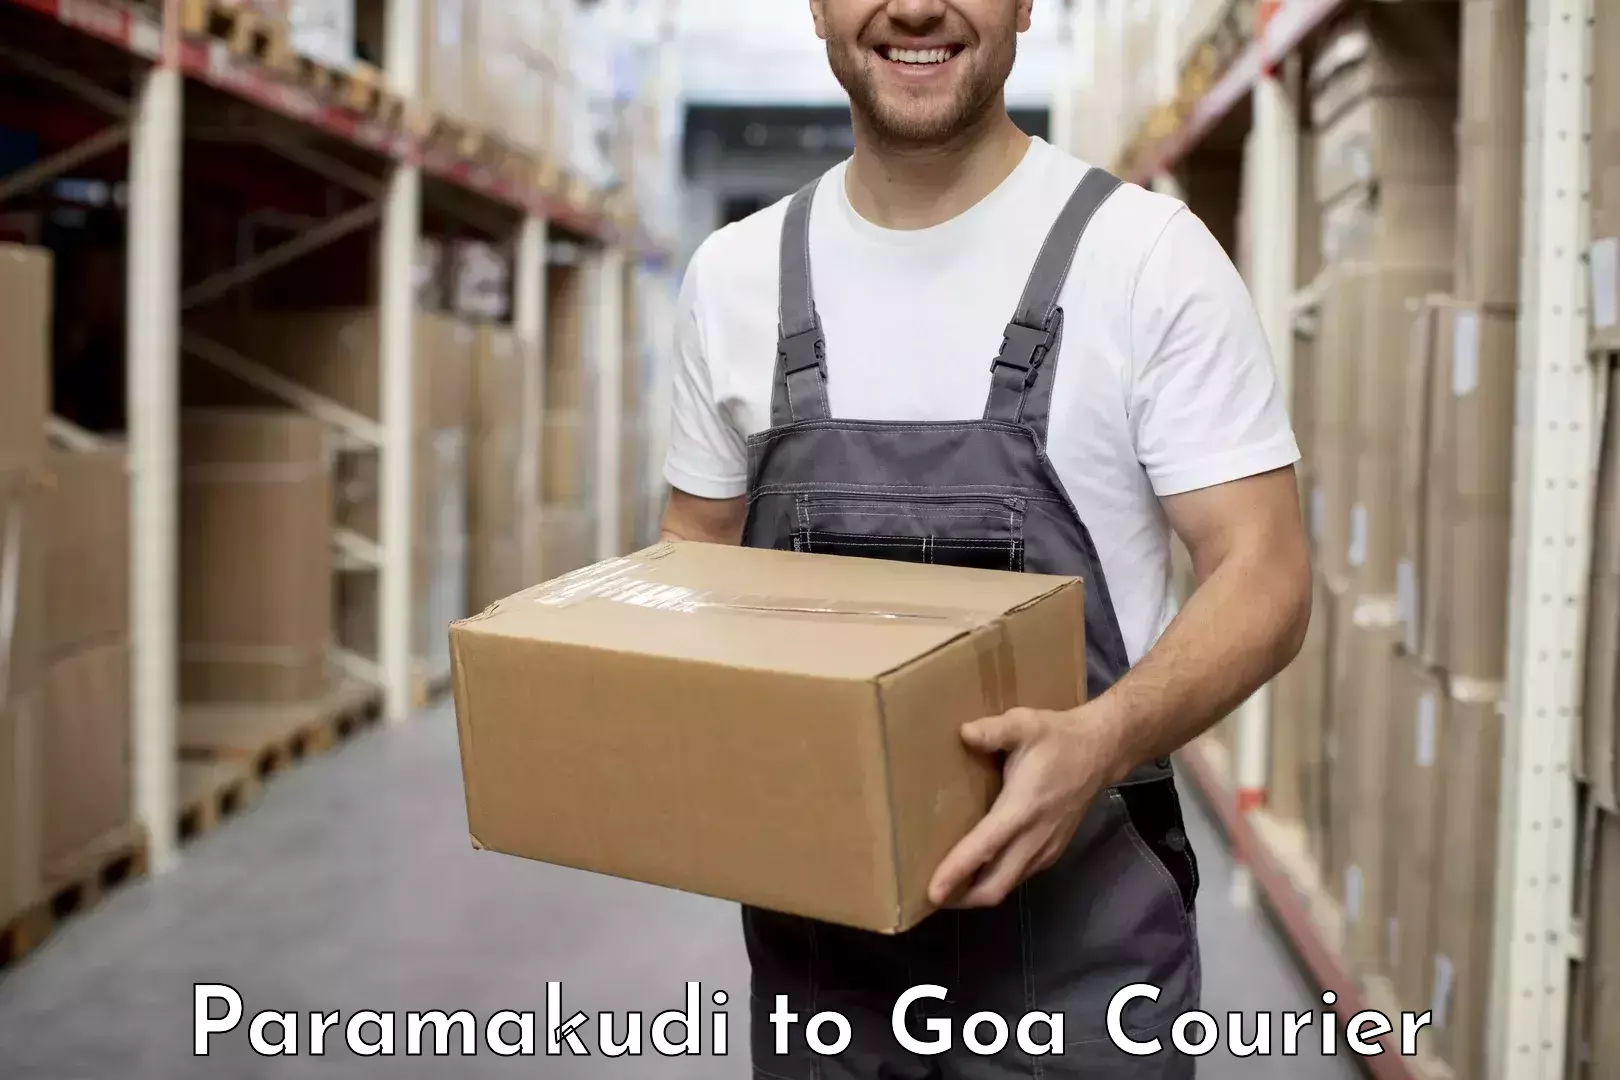 Professional courier handling Paramakudi to Panjim